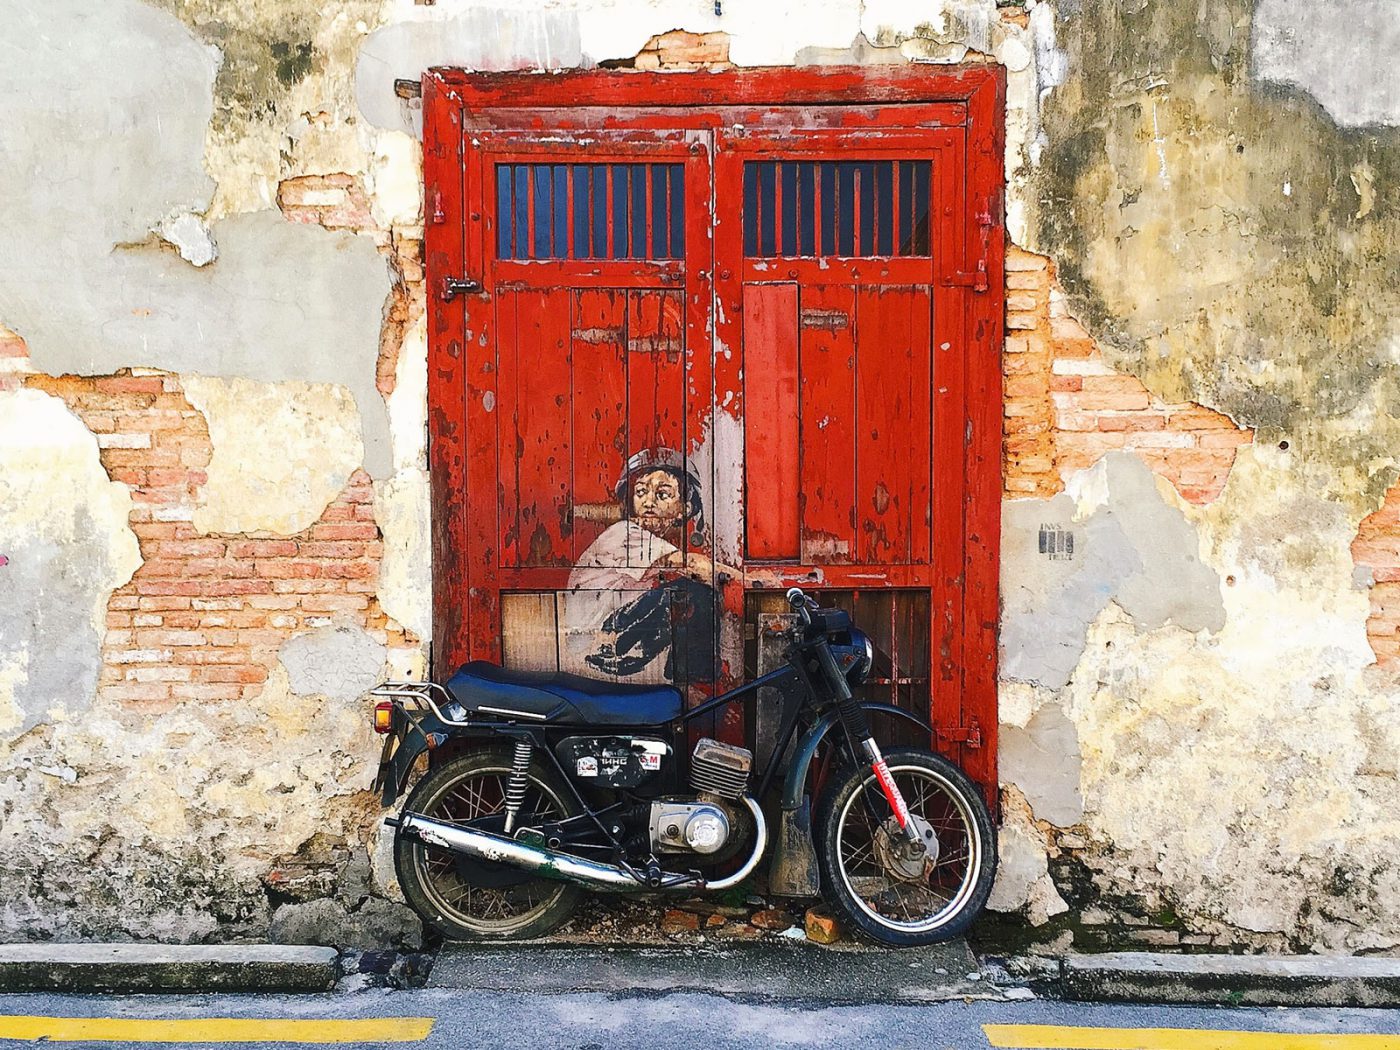 The famous "Boy on bike" Street art in Penang